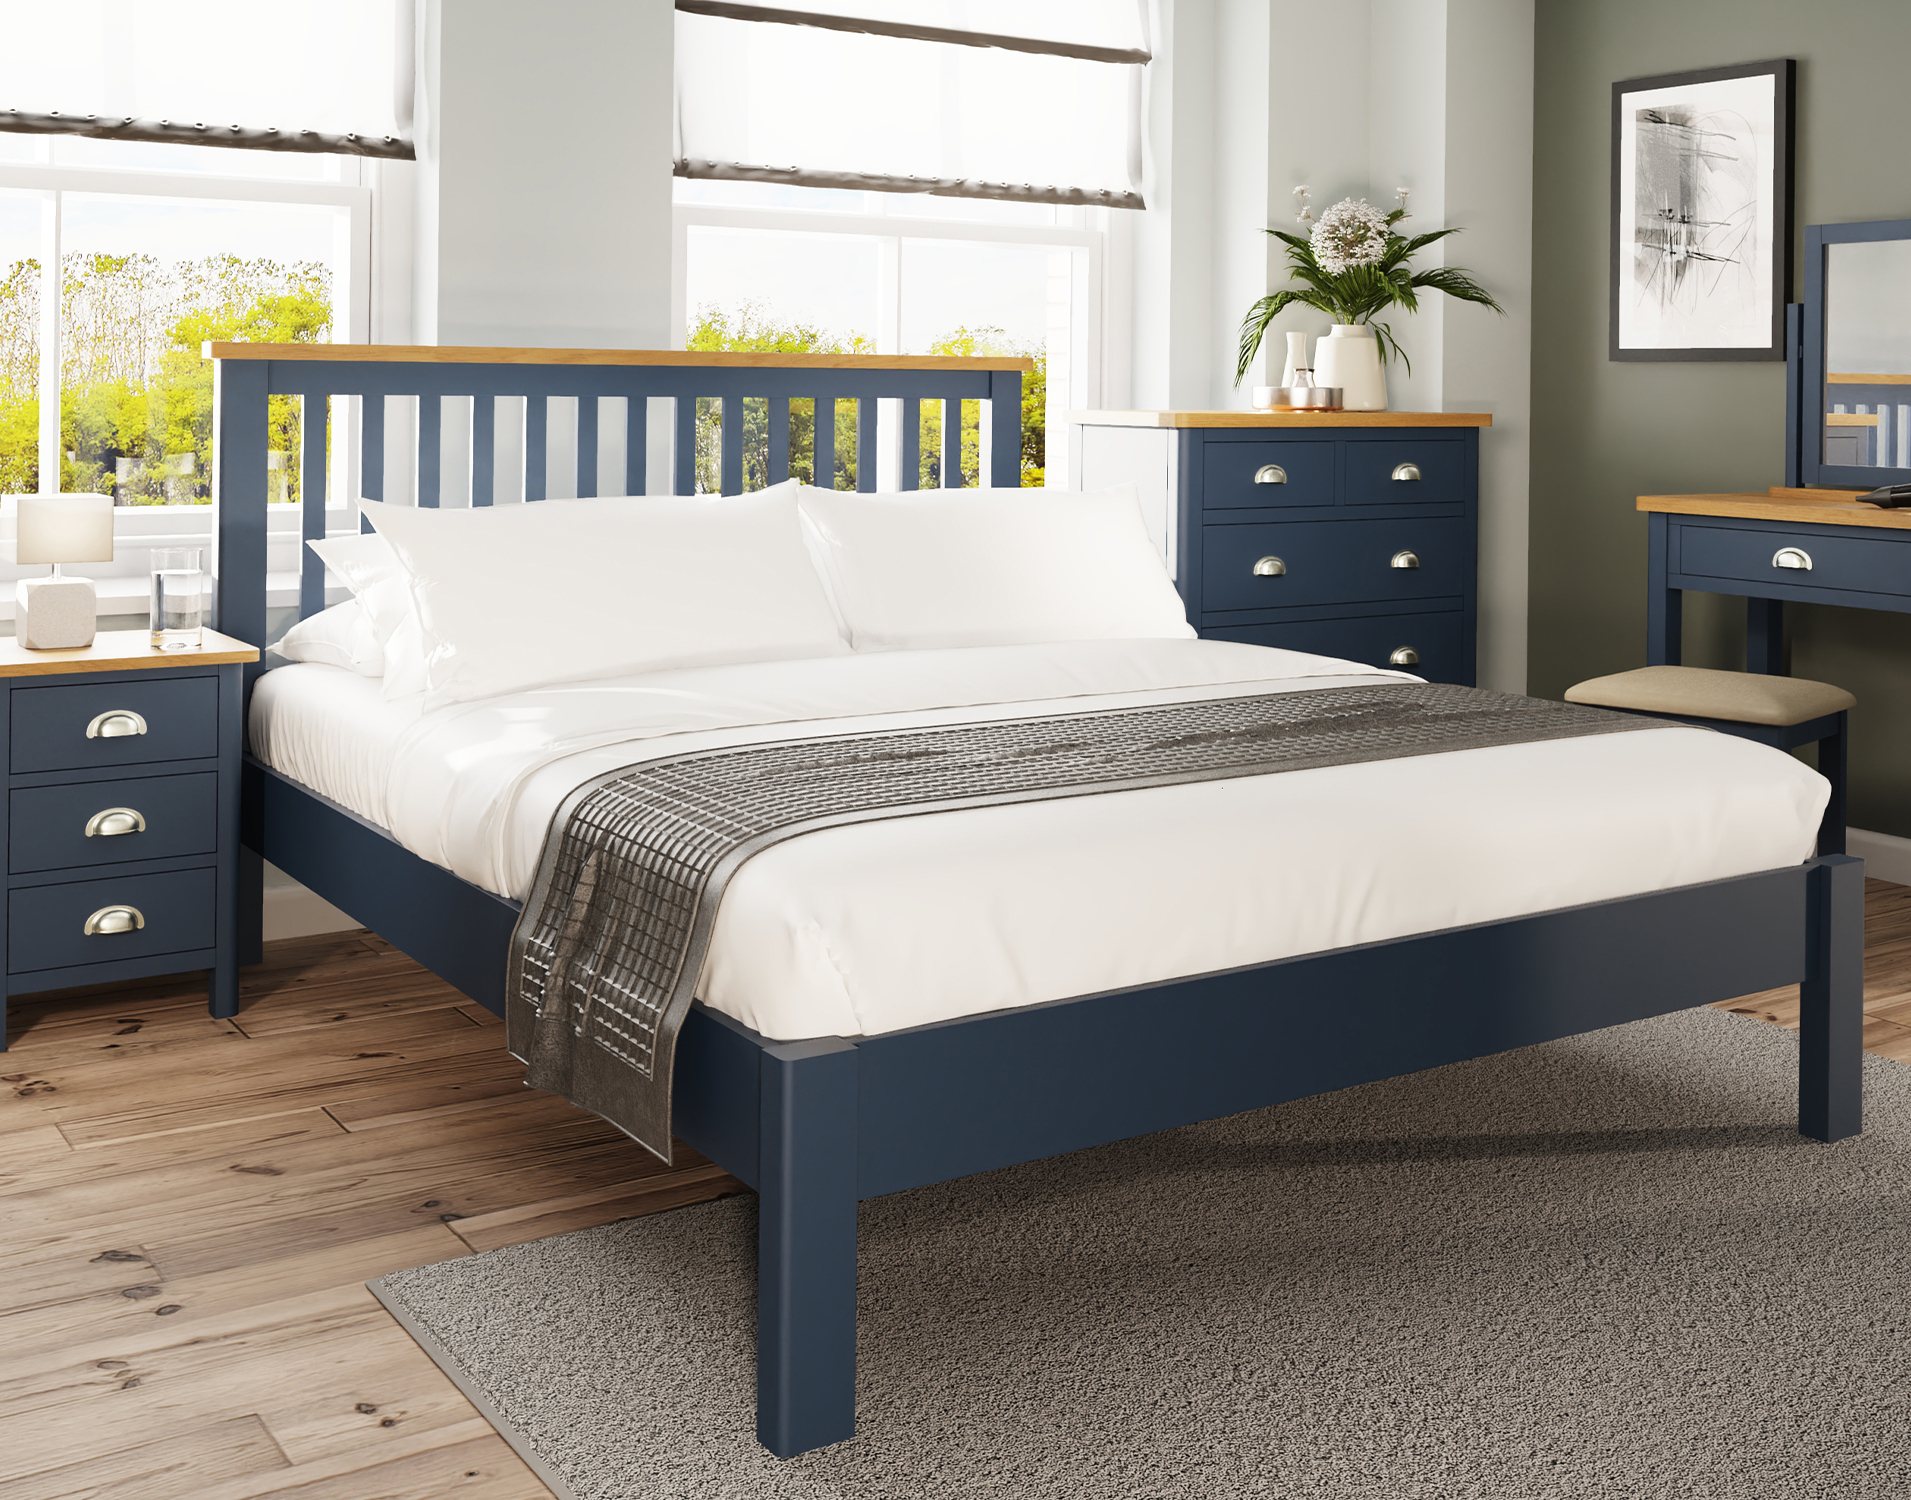 blue oak bedroom furniture